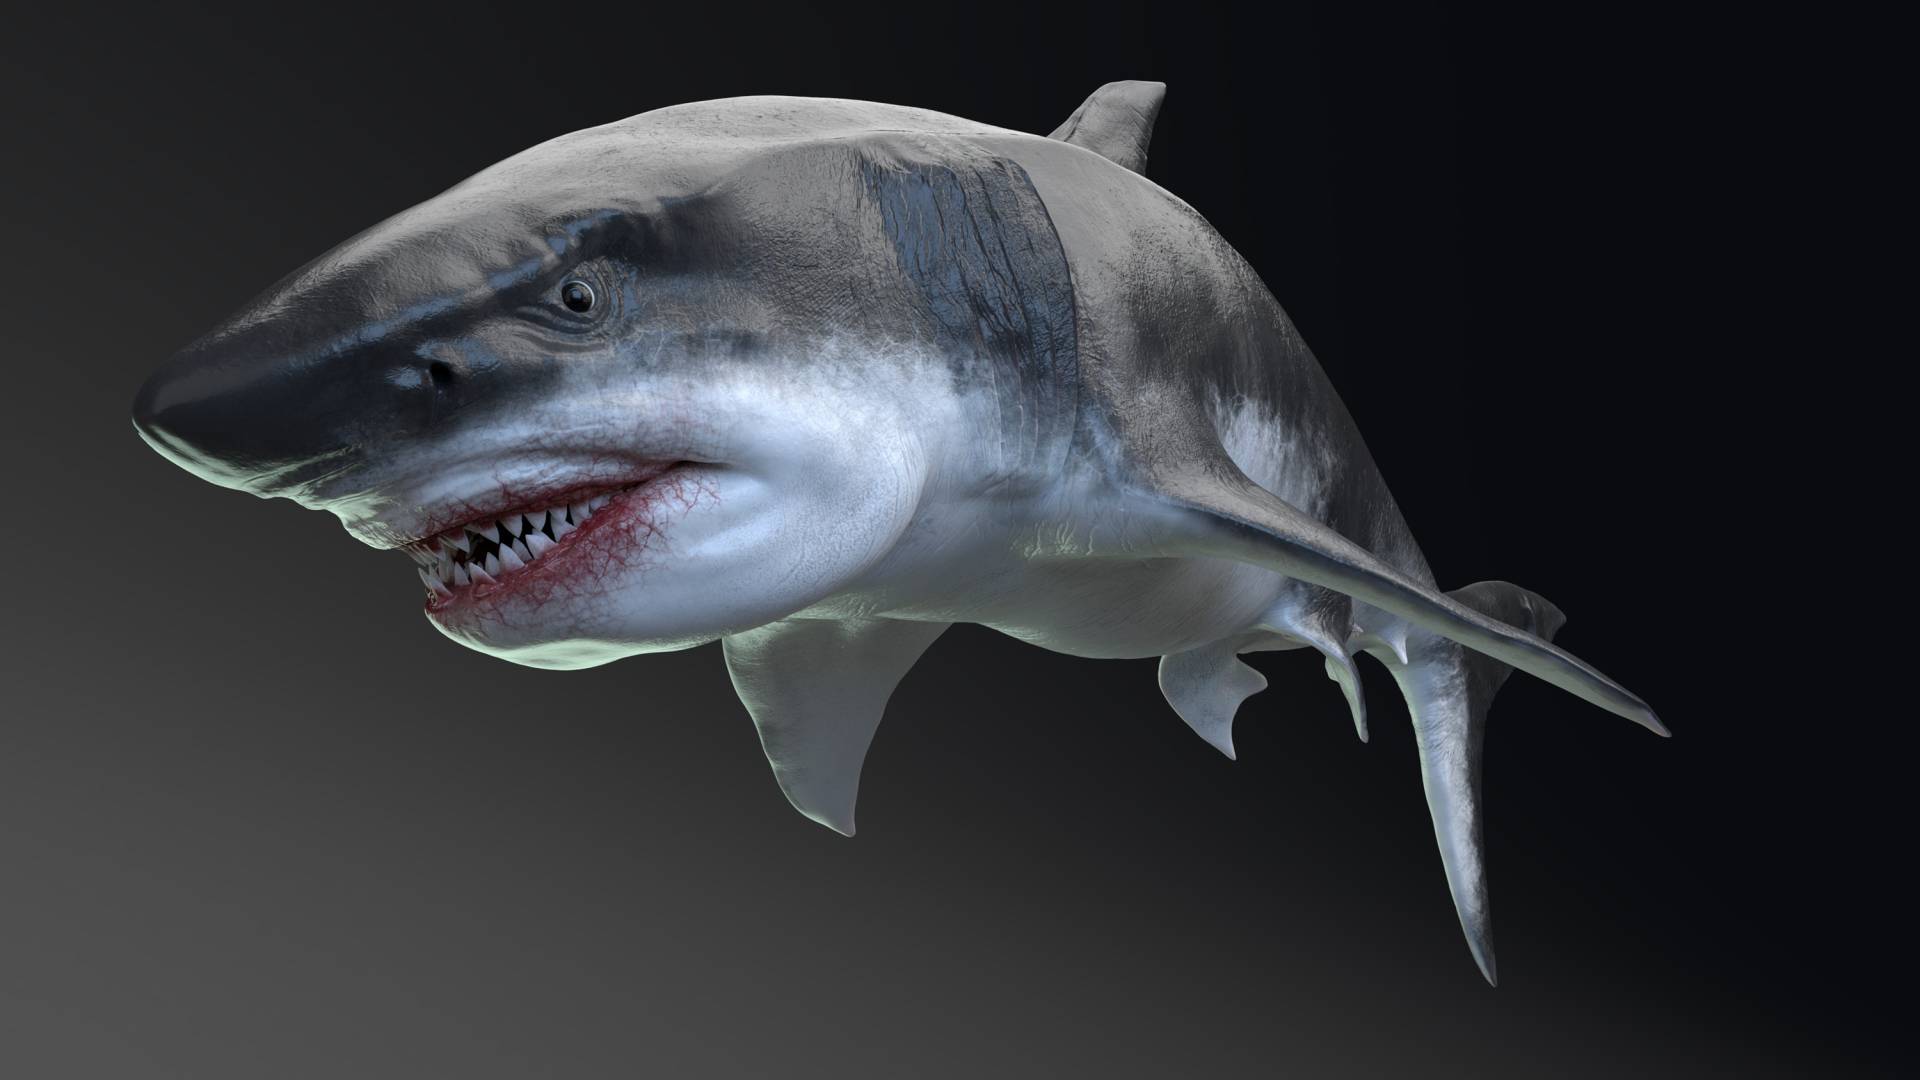 The Great White Shark vs. The Megladon